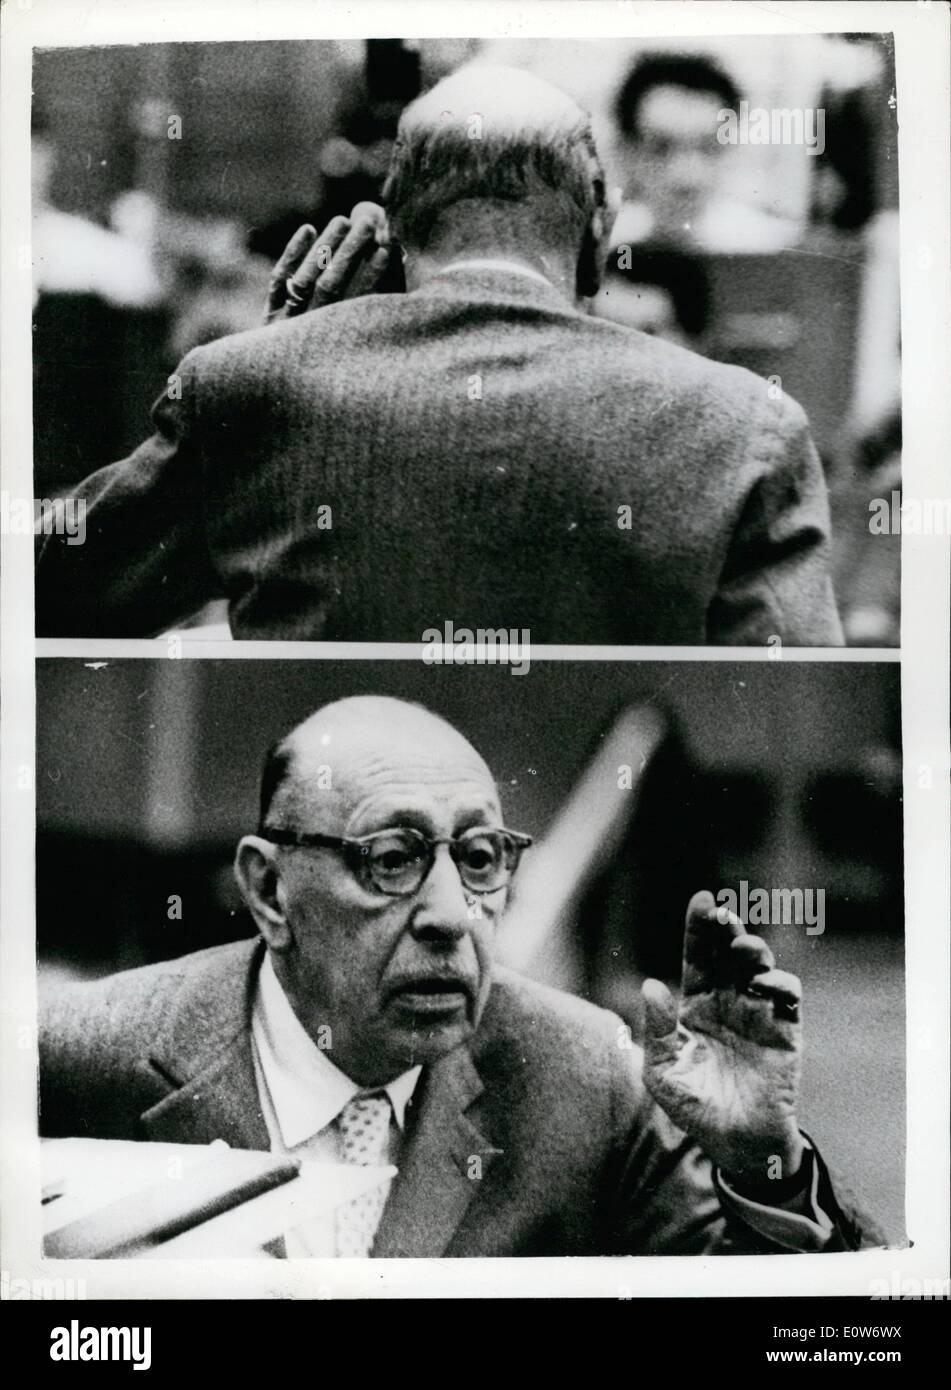 10. Oktober 1961 - der Mann mit einem Ohr für Musik - Igor Stravinsky probt das Untergrundarmee Symphony Orchestra: der weltweit größten lebenden Komponisten, 79-j hrige Igor Stravinsky, der Mann, der in 50 Jahren gehört hat, seine Musik entlassen und verurteilt, akzeptiert und mit Beifall begrüßt, war damit beschäftigt, gestern hören kritisch zu einer Probe mit dem BBC Symphony Orchestra. Die Festhalle wird mit prominenten her Master Konzert am Sonntag verpackt werden. Foto zeigt zwei Studien von Igor Stravinsky als (oben) Tassen er seine Hand zu seinem Auto- und unten hört die Untergrundarmee Stockfoto